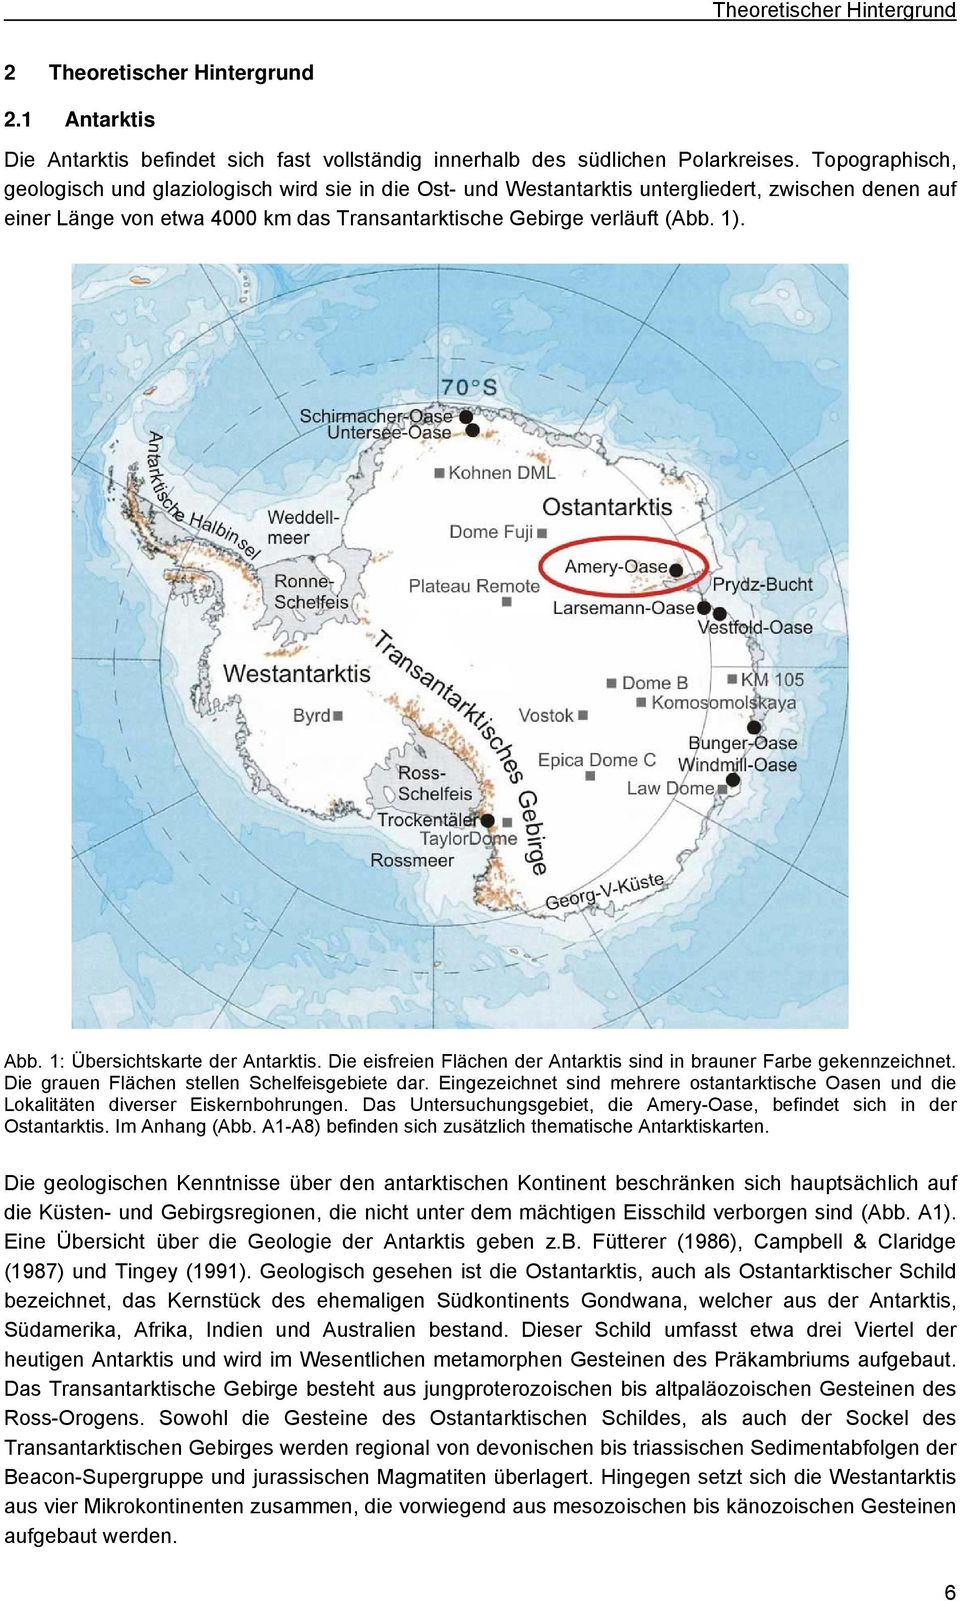 1: Übersichtskarte der Antarktis. Die eisfreien Flächen der Antarktis sind in brauner Farbe gekennzeichnet. Die grauen Flächen stellen Schelfeisgebiete dar.